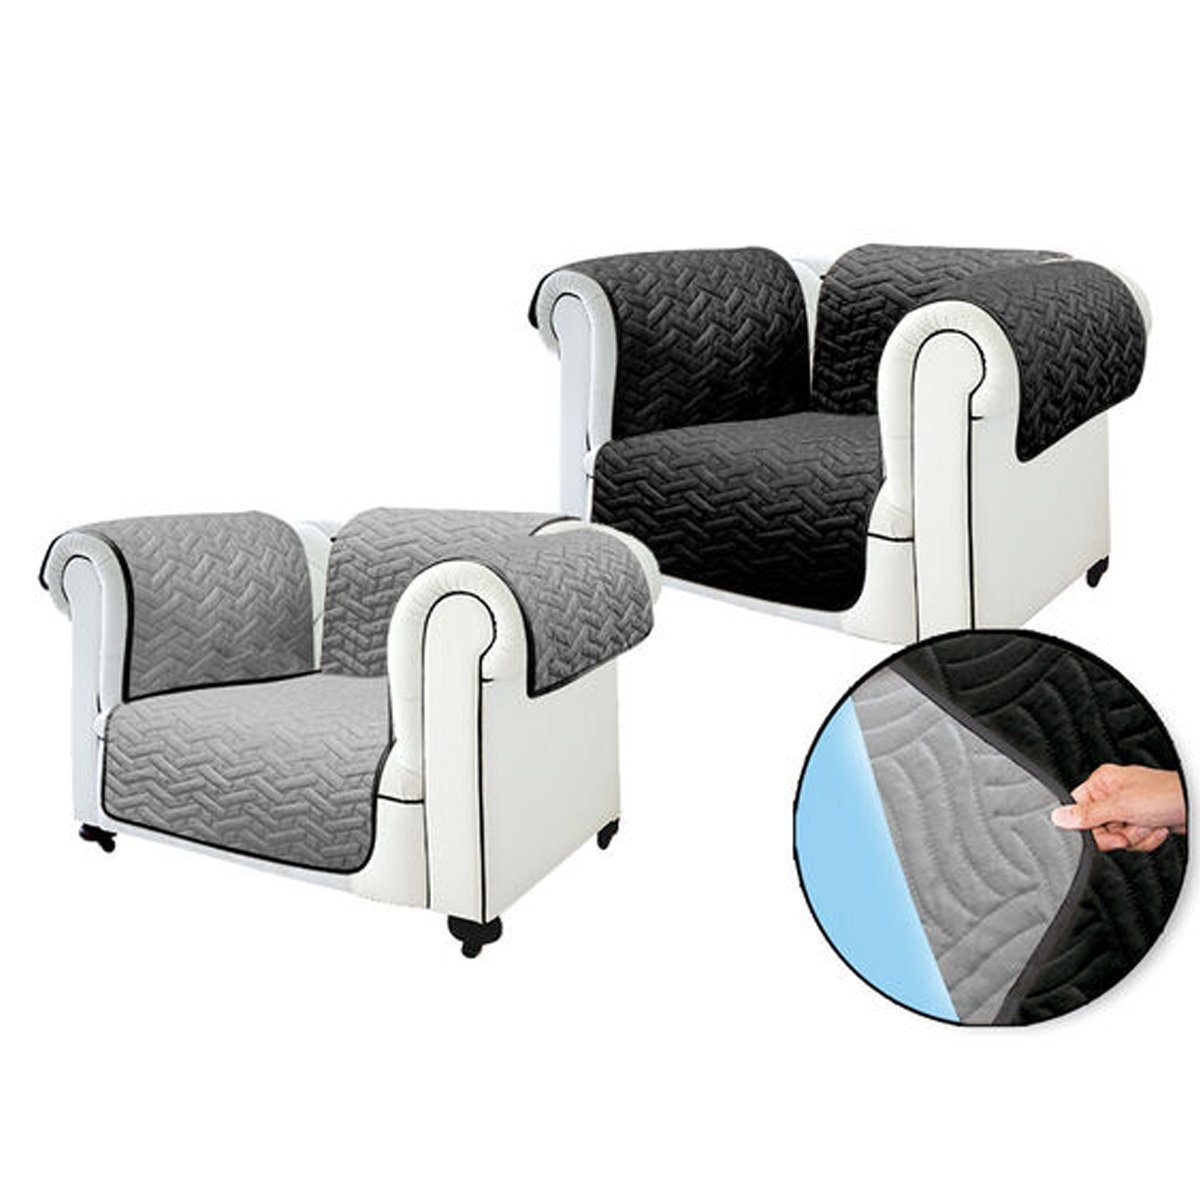 Sofaschoner Sofa wasserabweisend, Starlyf, Sofahusse Cover oder Sesselbezug schwarz/grau wendbar, Sofabezug